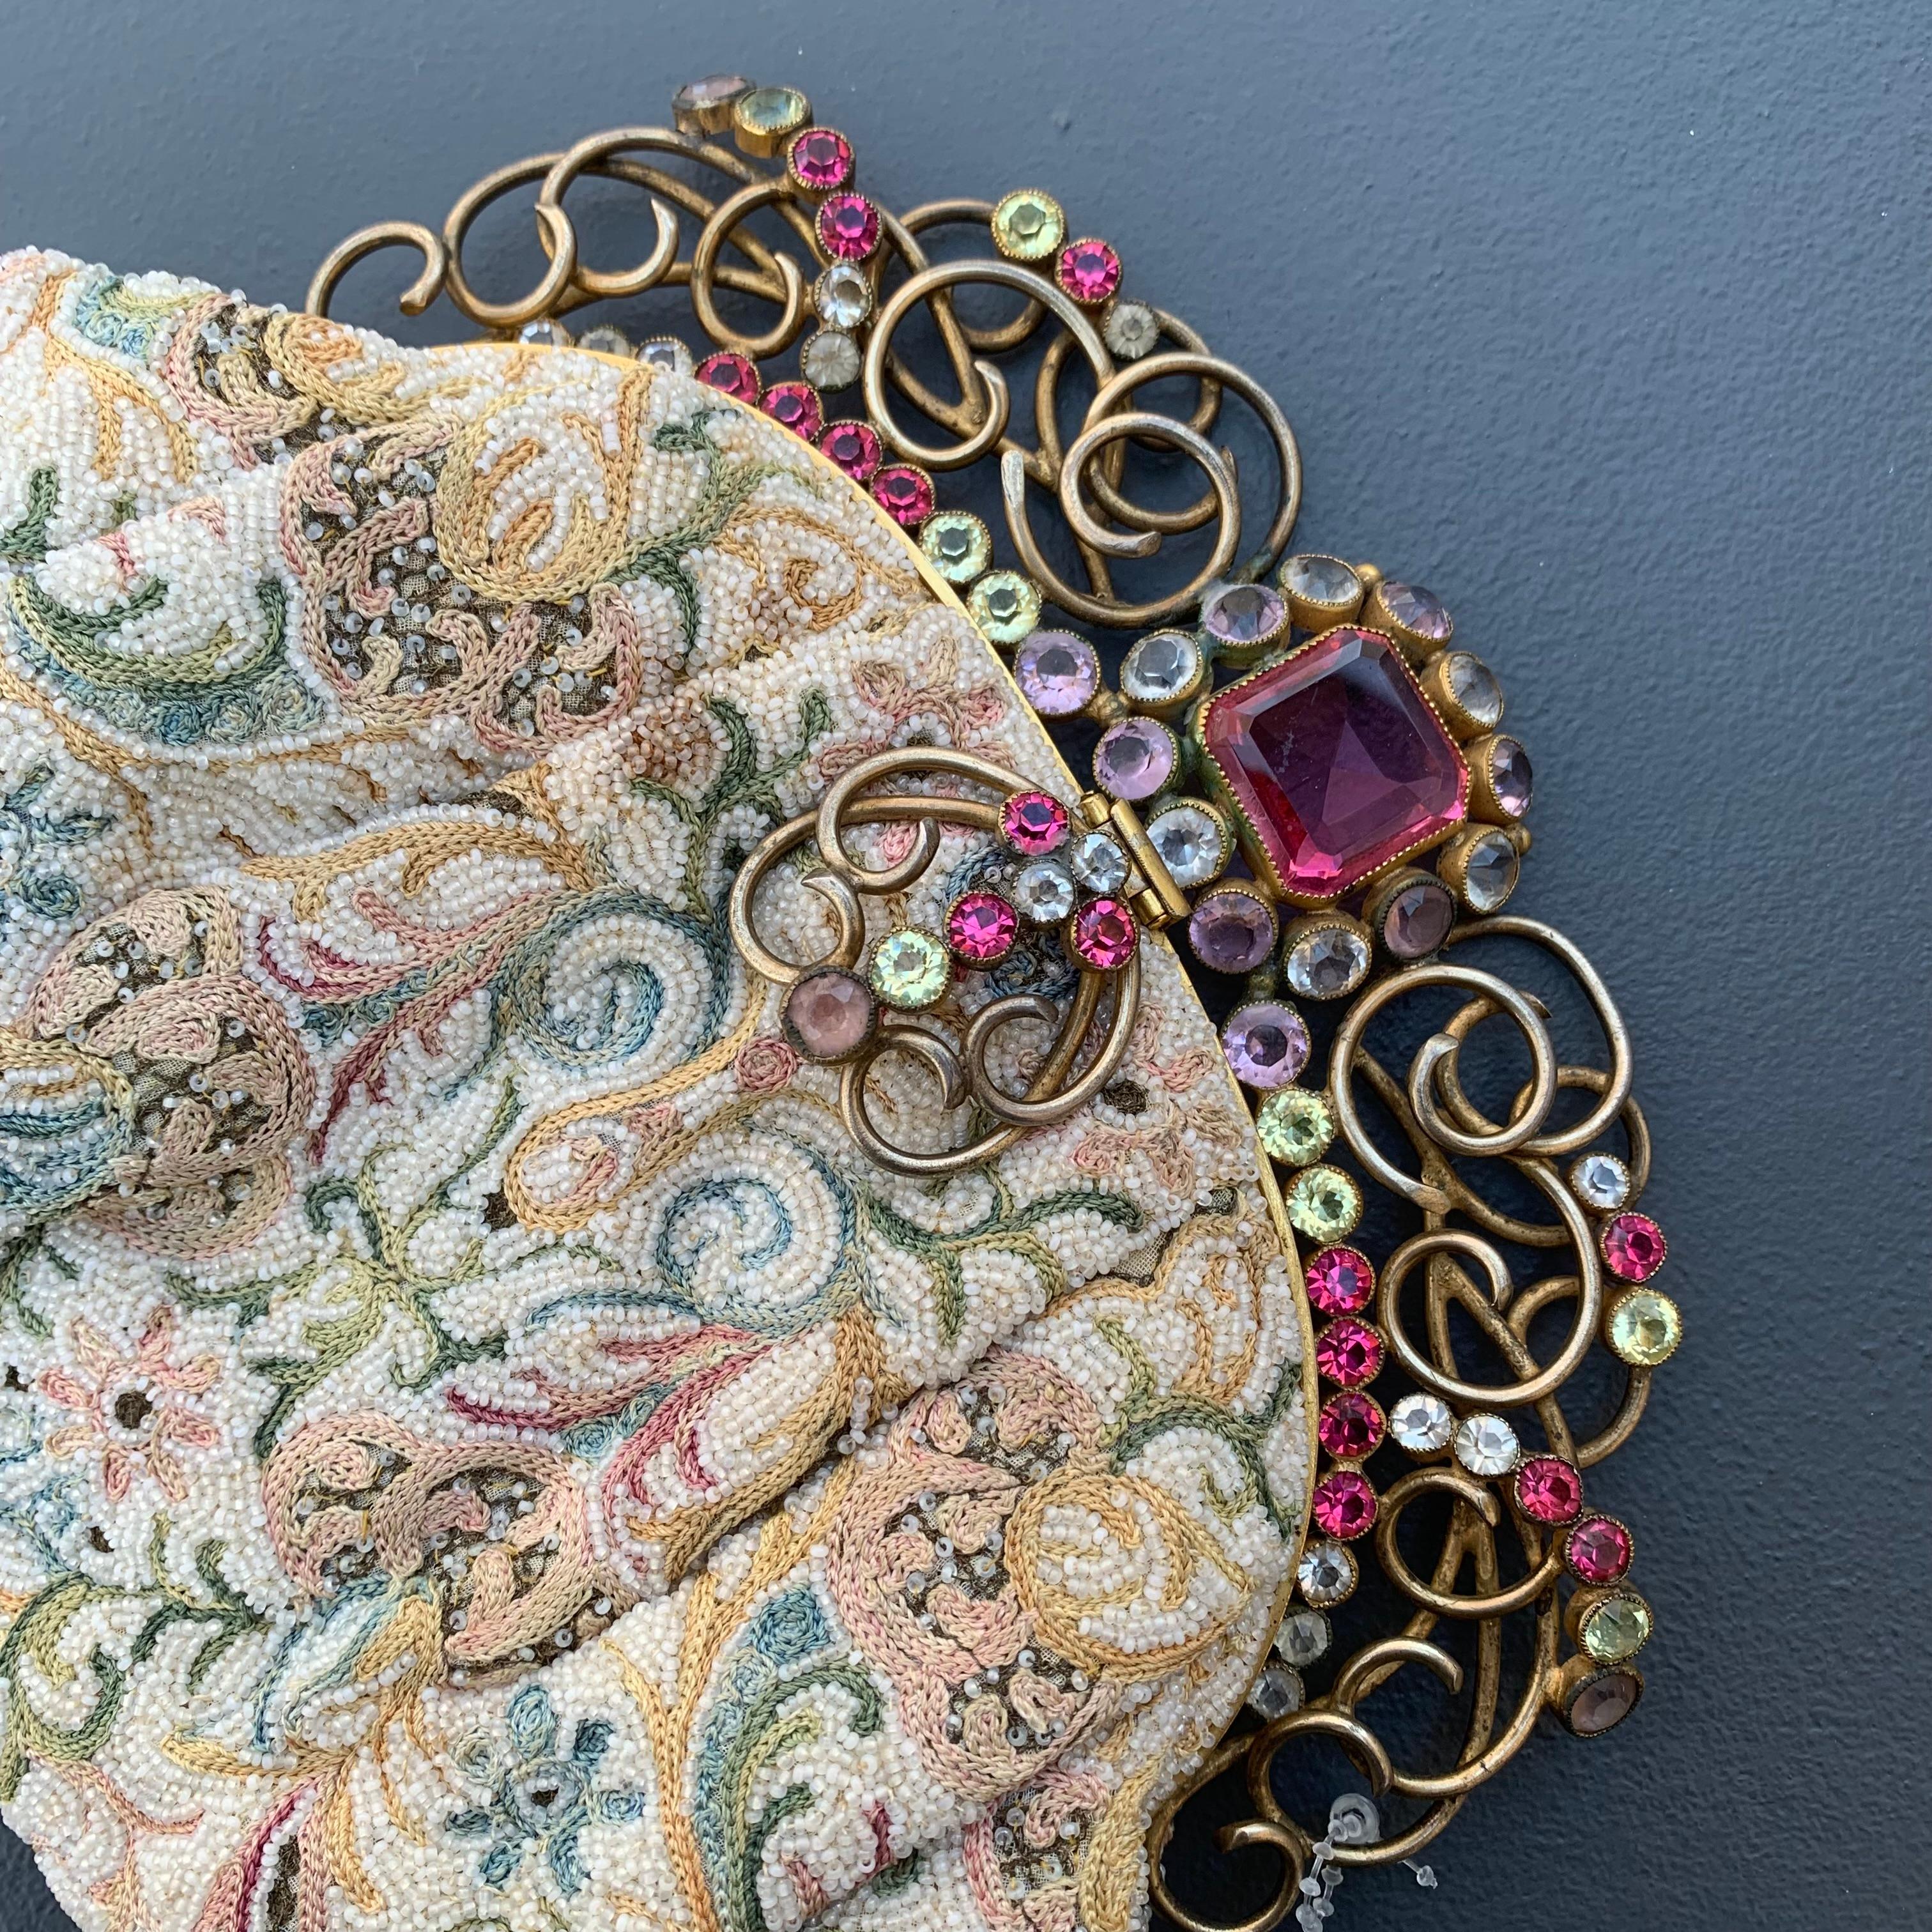 Women's Josef Embroidery Hand Beaded Purse Handbag Jeweled Frame USA For Sale